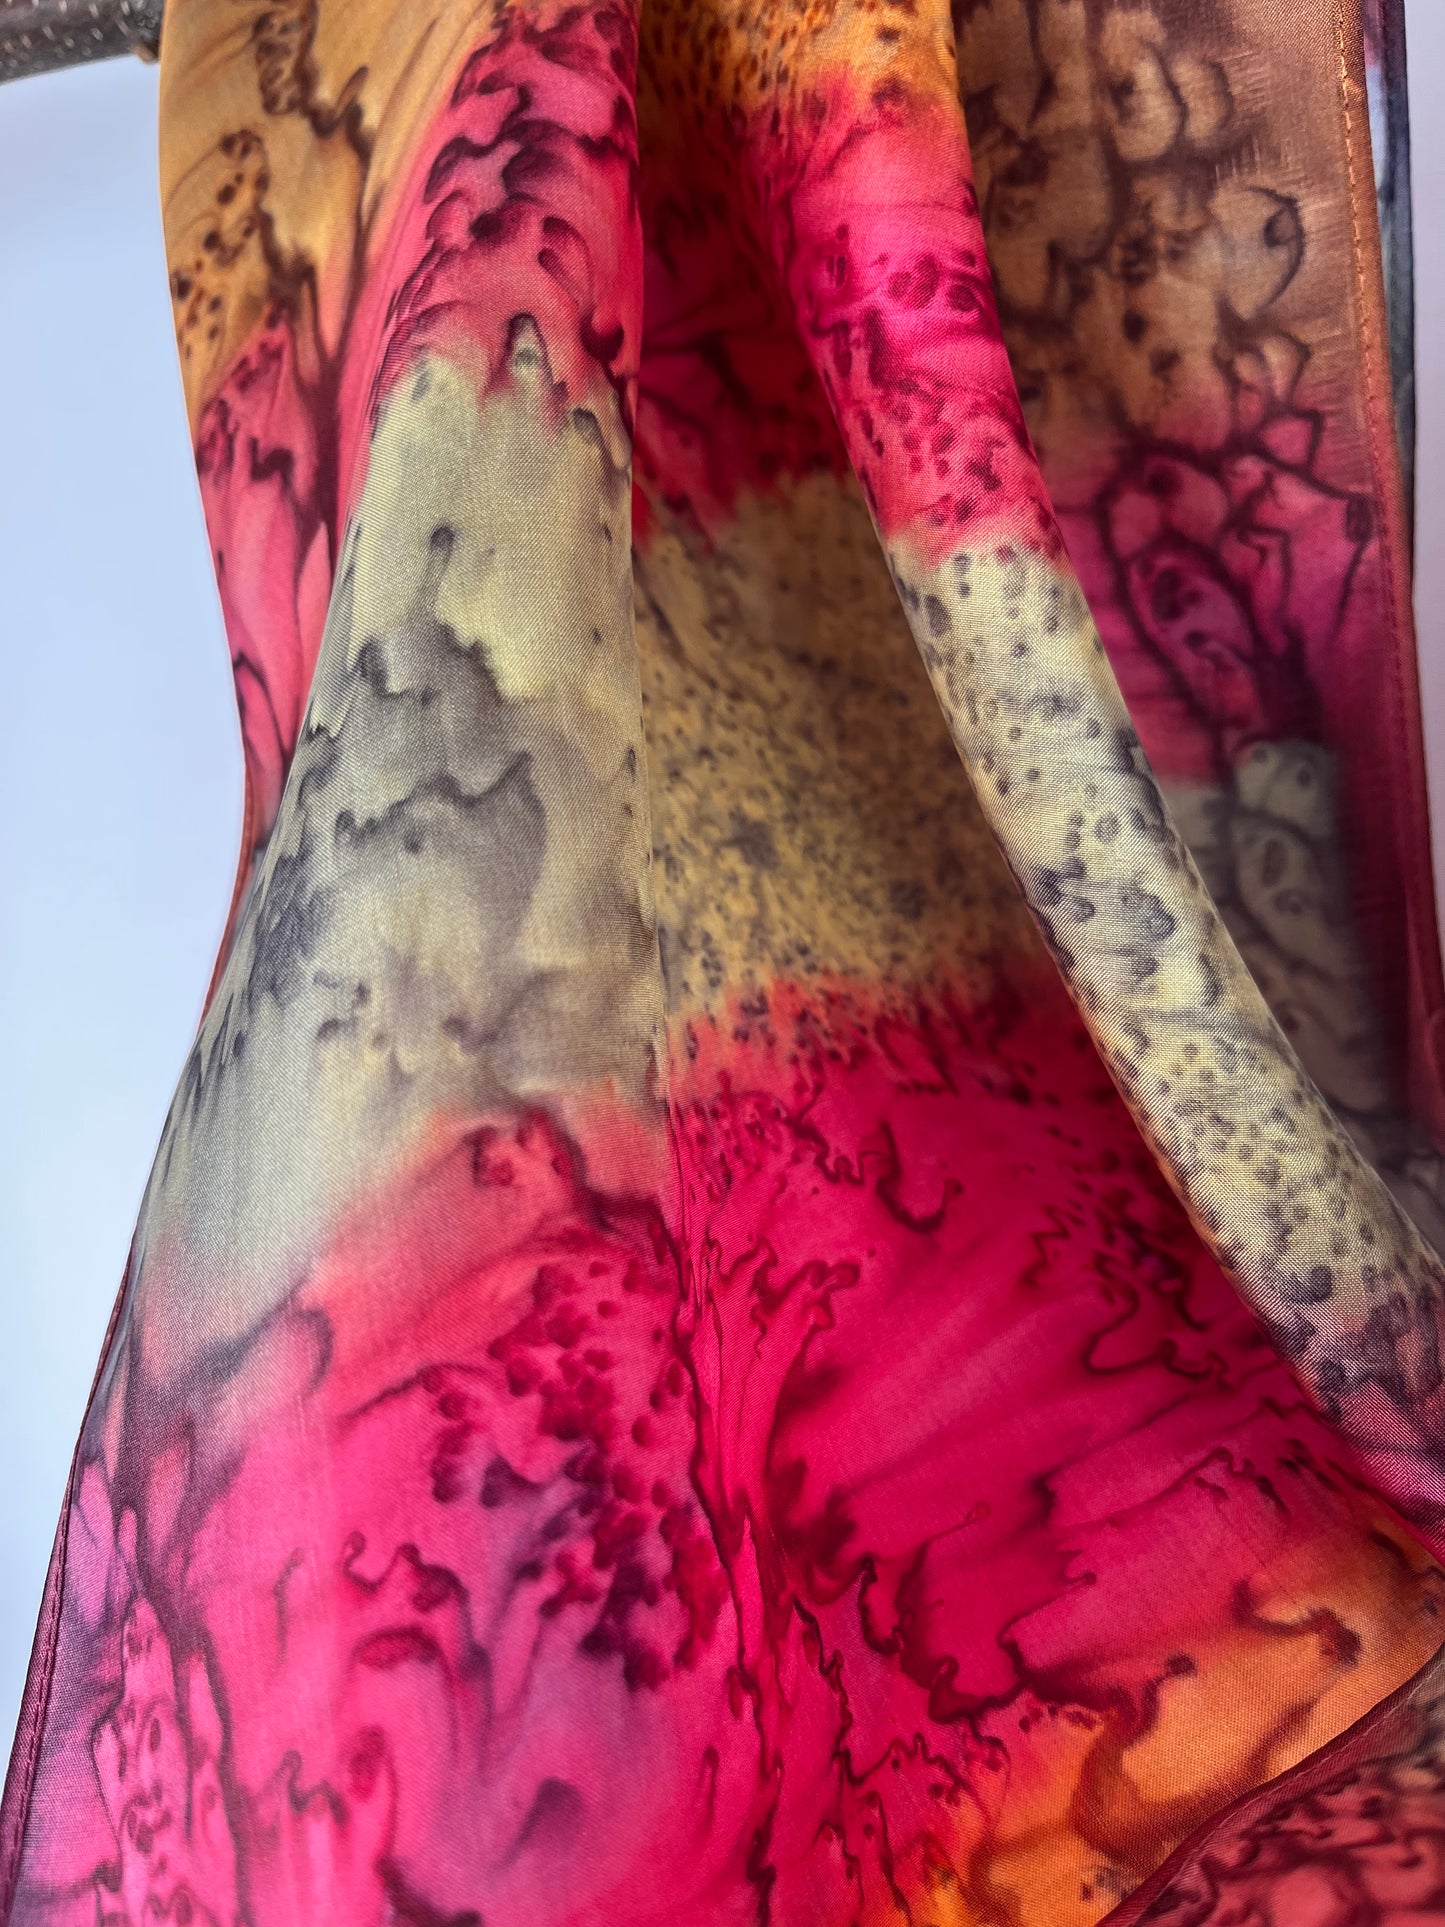 "Mermaid - Summer Garden” - Hand-dyed Silk Scarf - $115